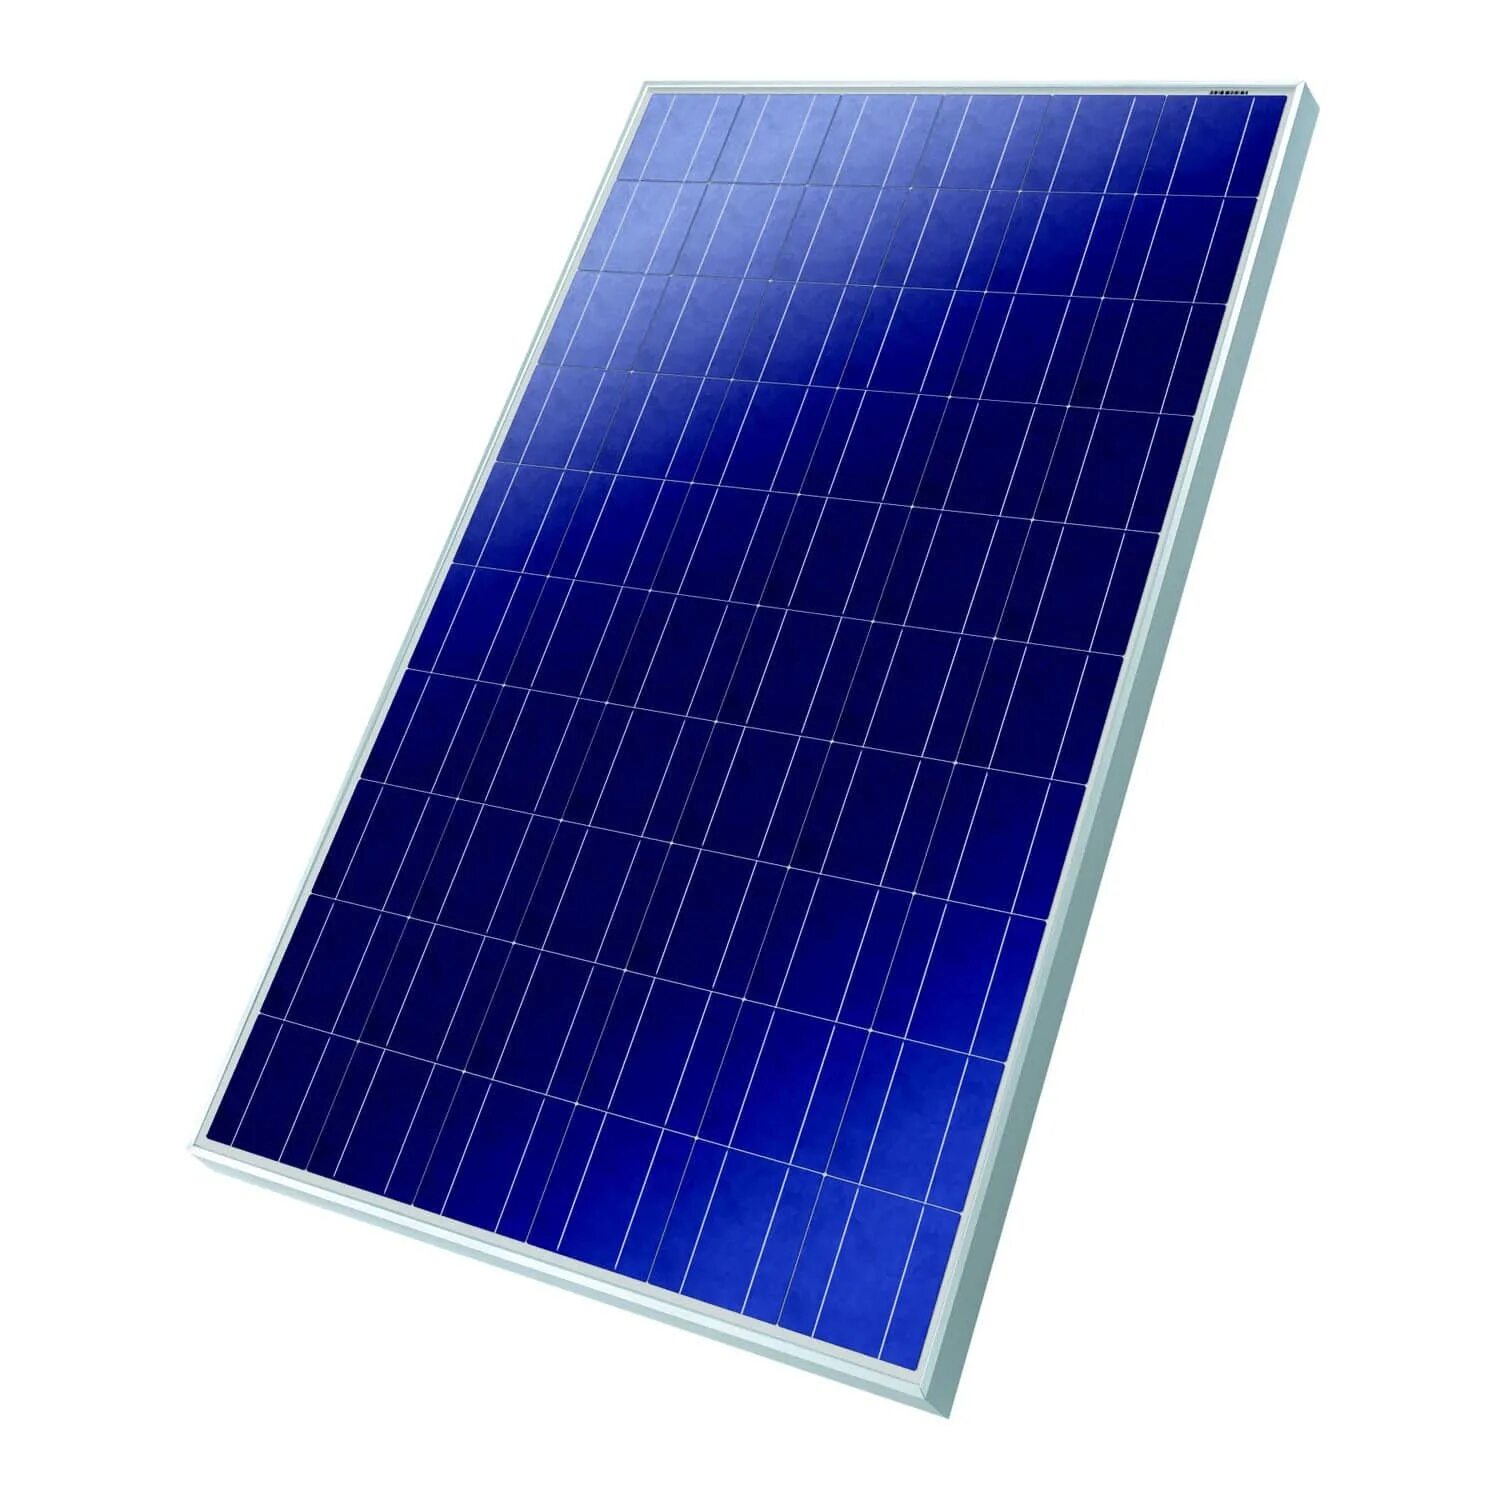 Количество солнечных элементов. Поликристаллические солнечные батареи. PV Solar Panel. Поликристаллический кремний солнечные батареи. Поликристалл и монокристалл солнечные панели.